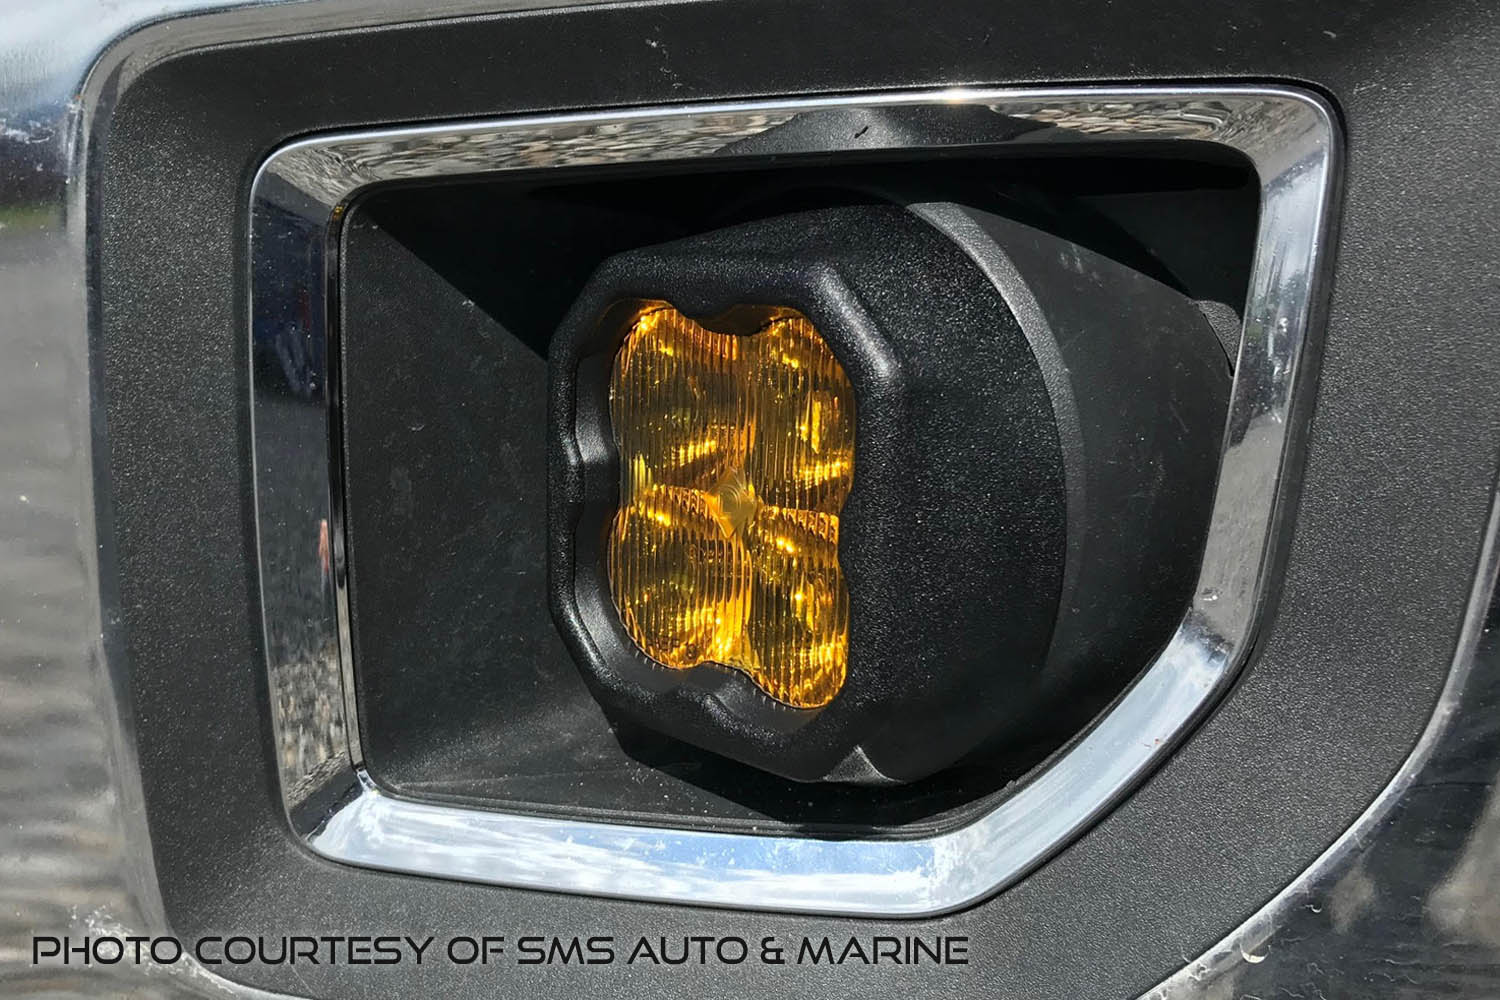 SS3 LED Fog Light Kit for 2012-2018 Chevrolet Sonic White SAE/DOT Driving Pro Diode Dynamics